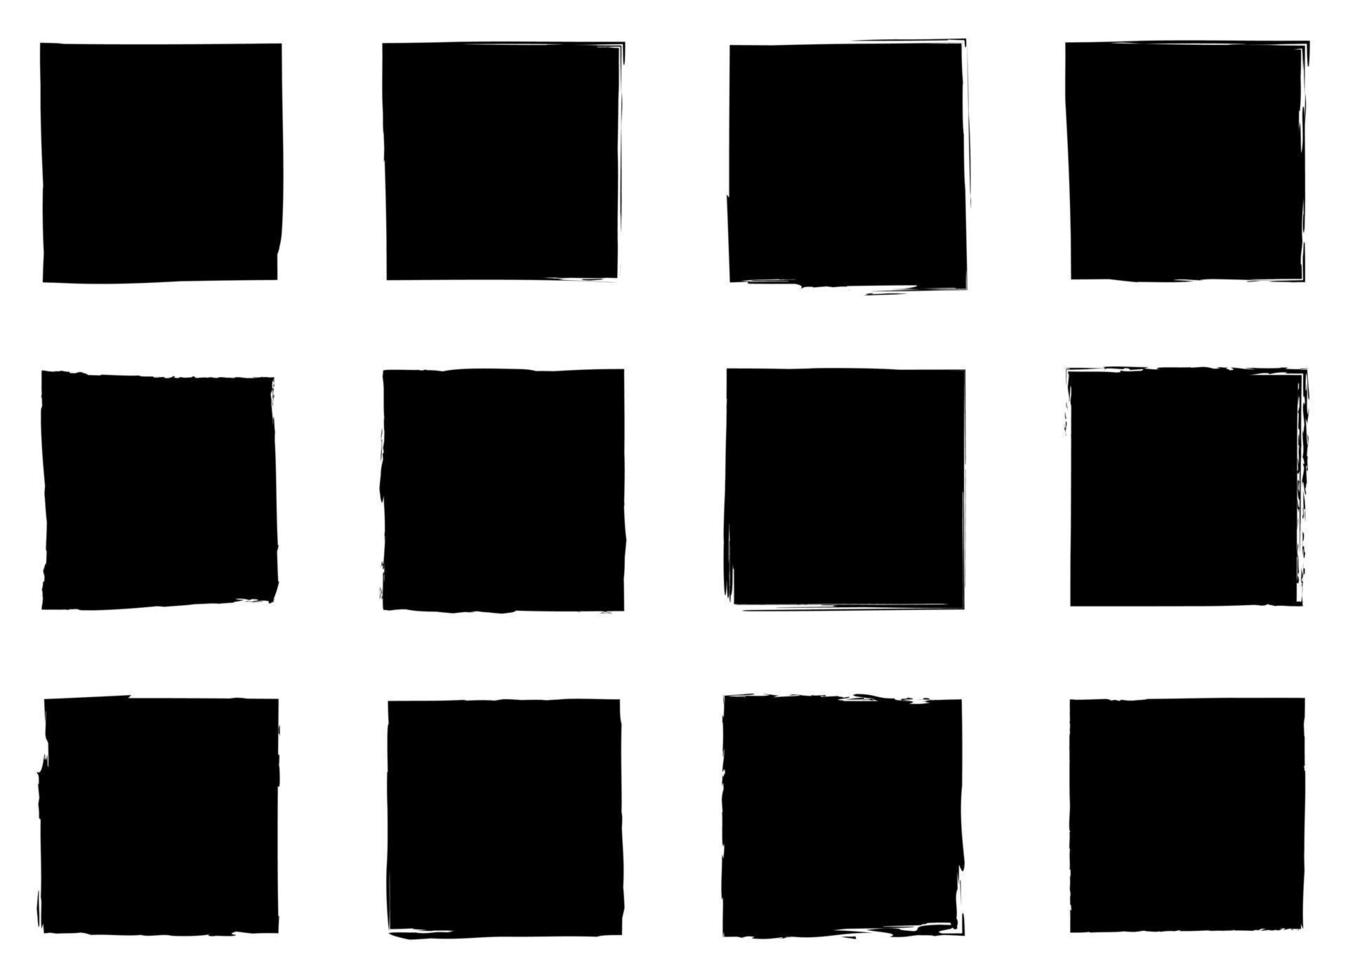 svart enkel baner vektor design illustration isolerat på vit bakgrund